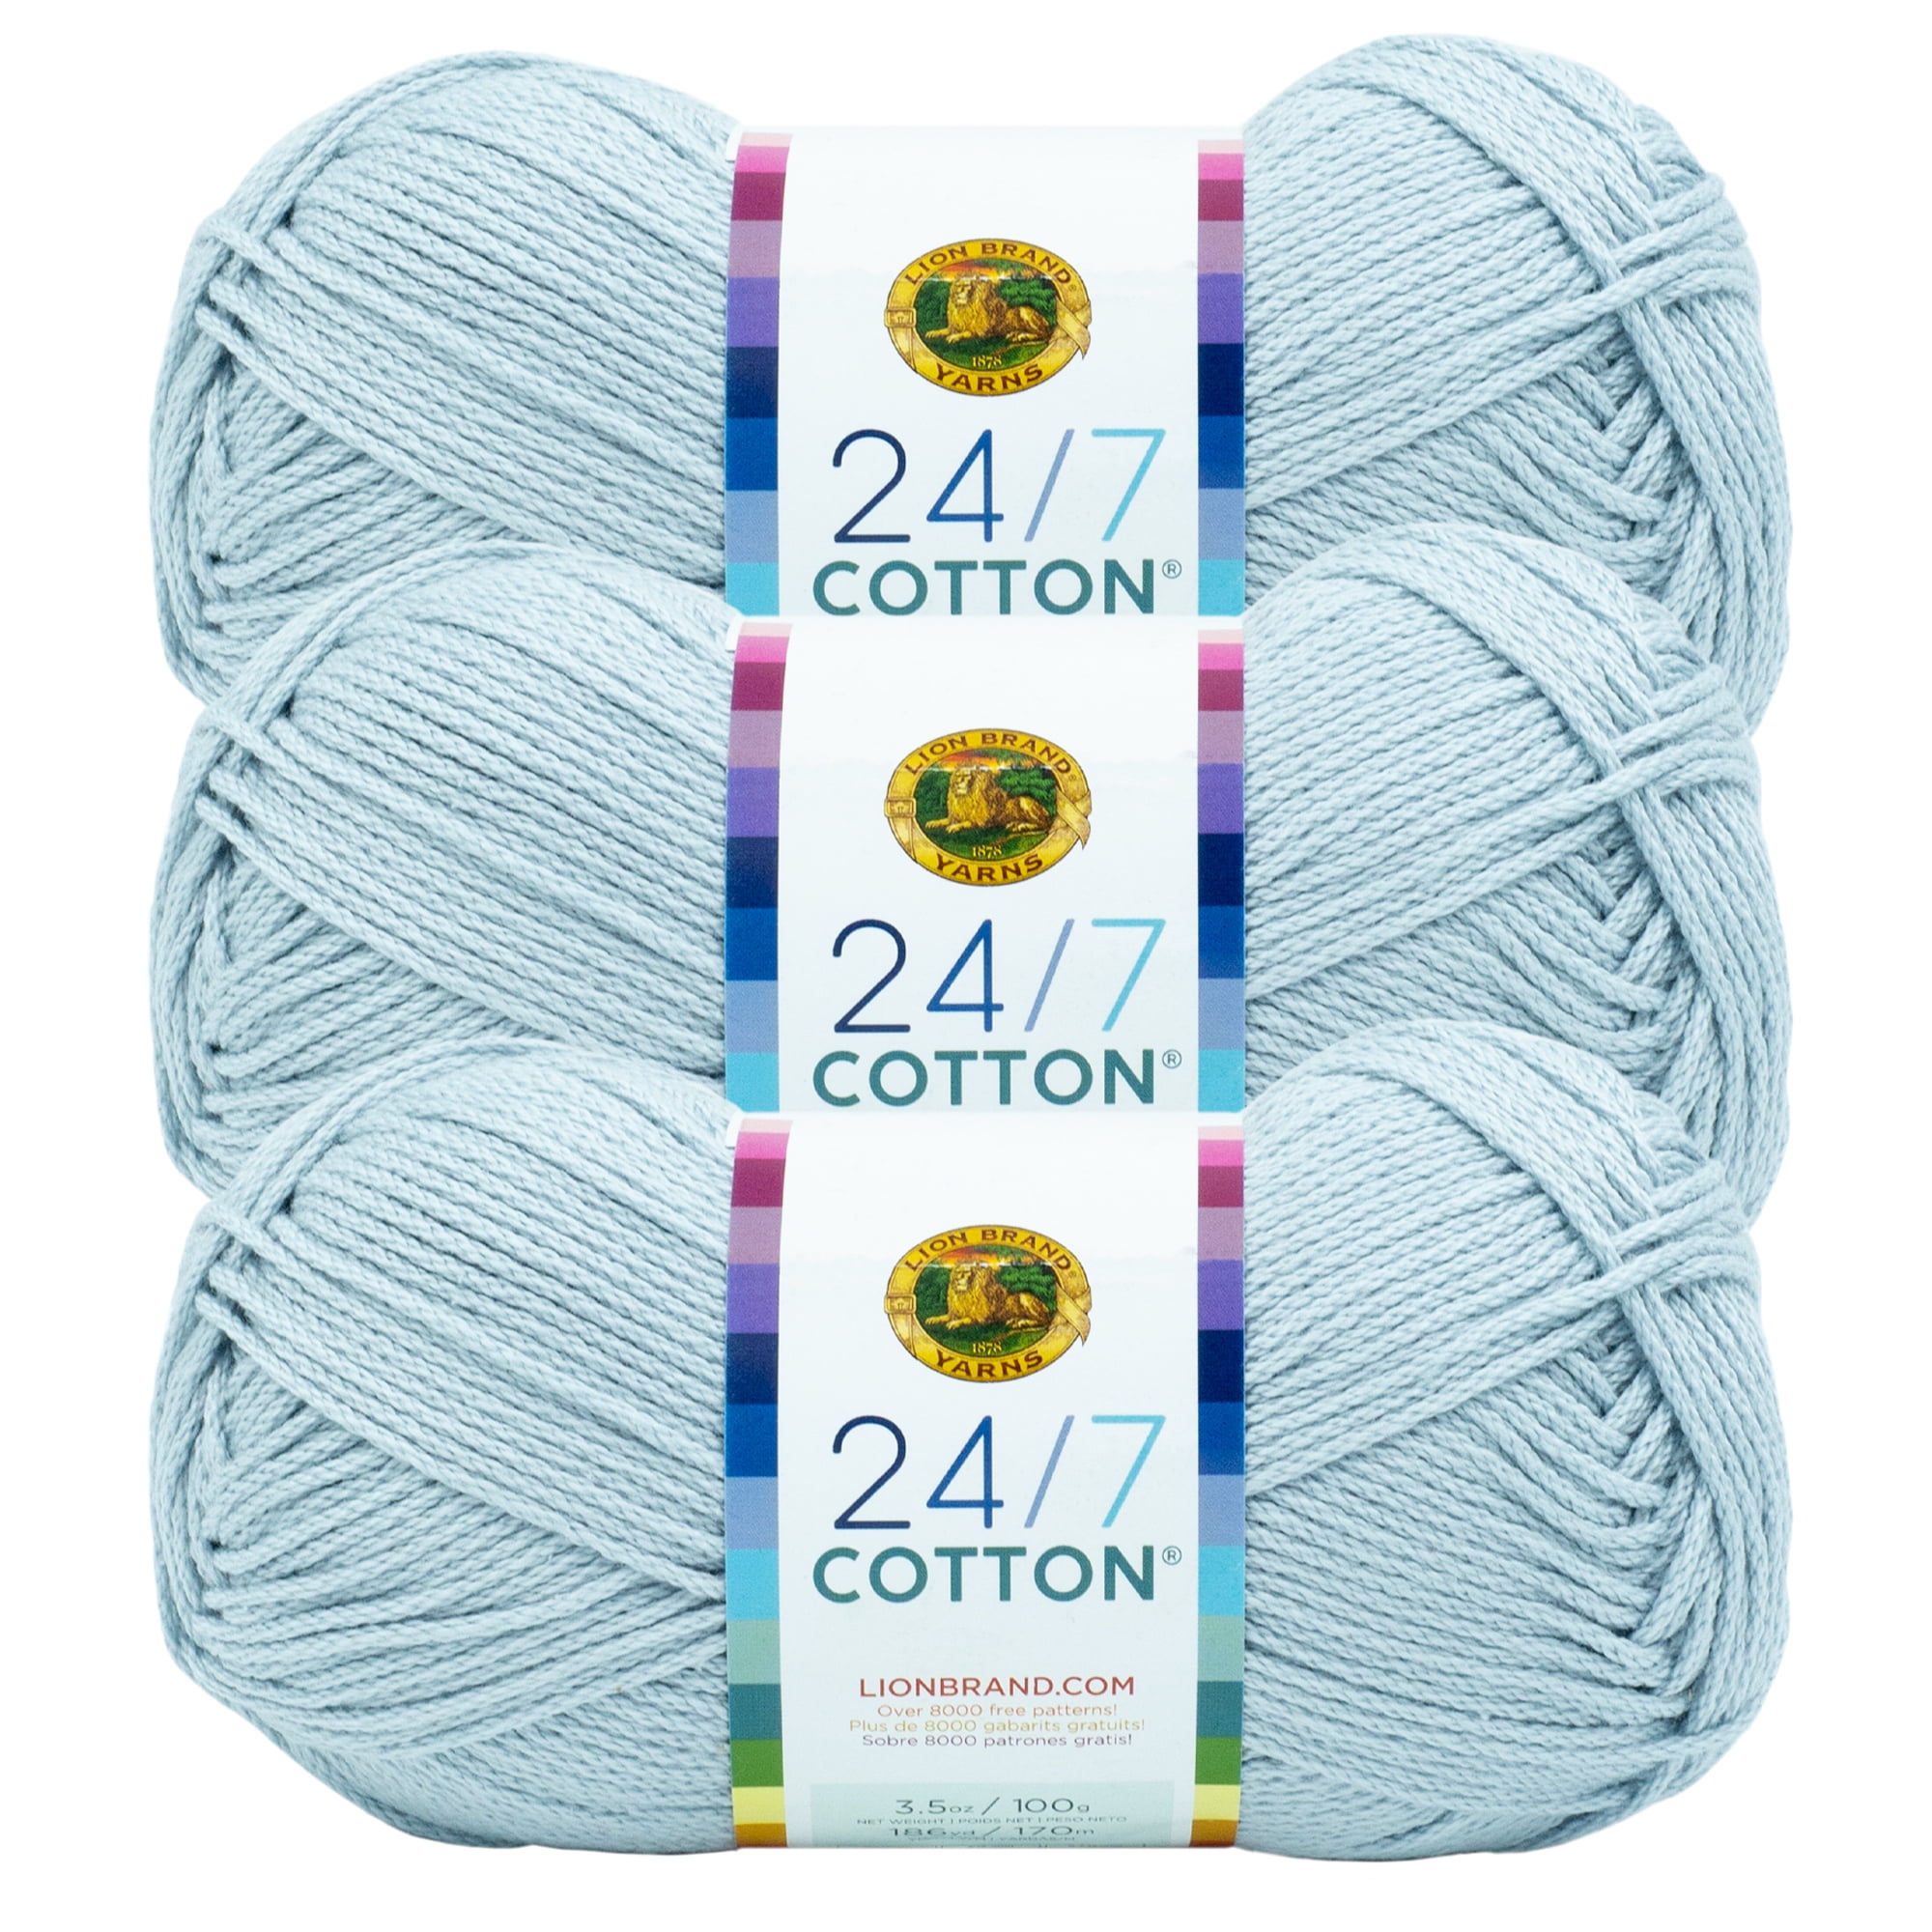 Lion Brand 24/7 Cotton Yarn-Bay Leaf, 1 count - Baker's